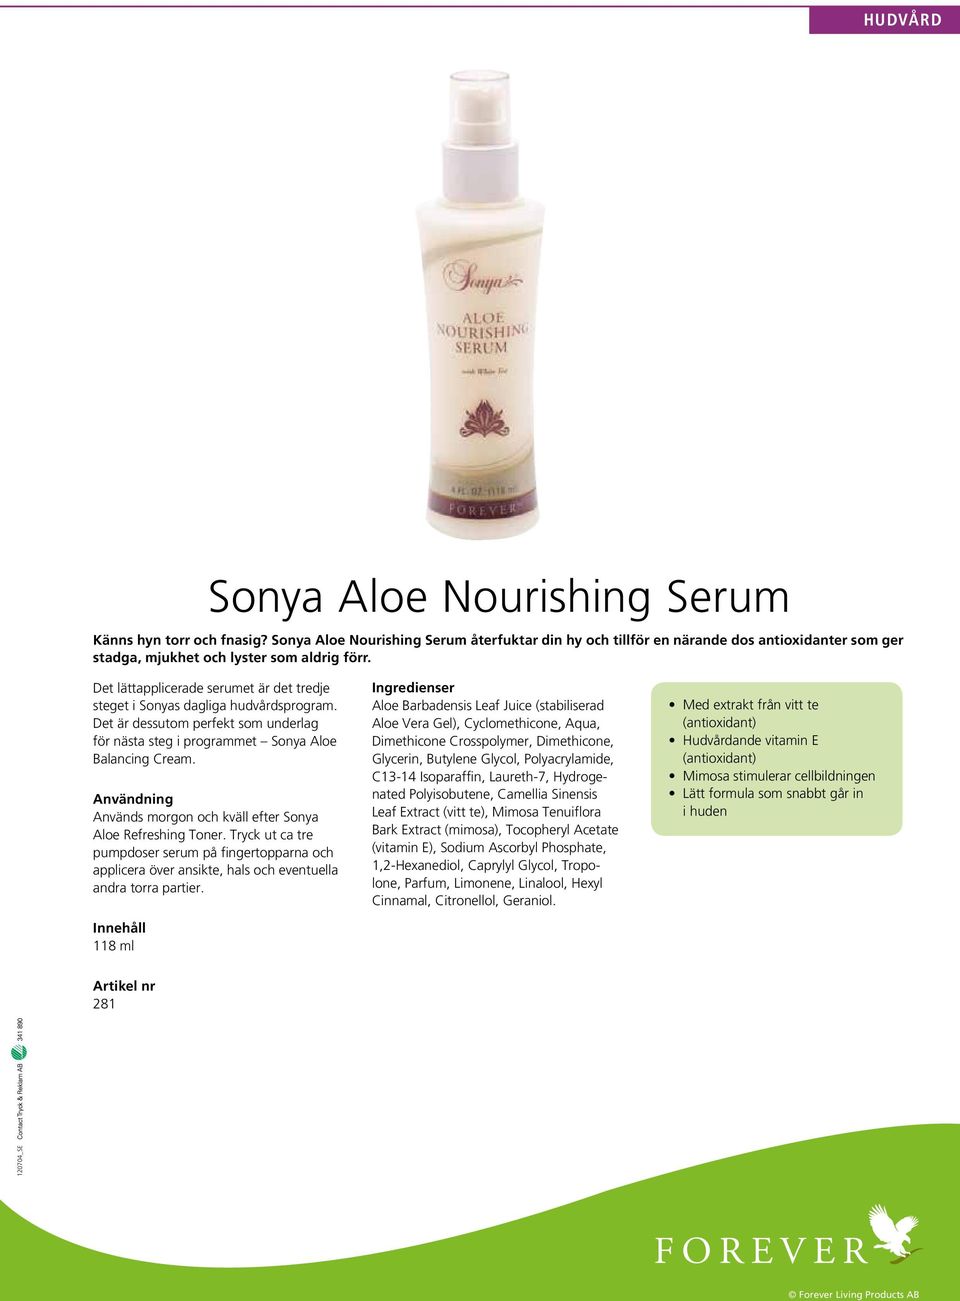 Användning Används morgon och kväll efter Sonya Aloe Refreshing Toner. Tryck ut ca tre pumpdoser serum på fingertopparna och applicera över ansikte, hals och eventuella andra torra partier.